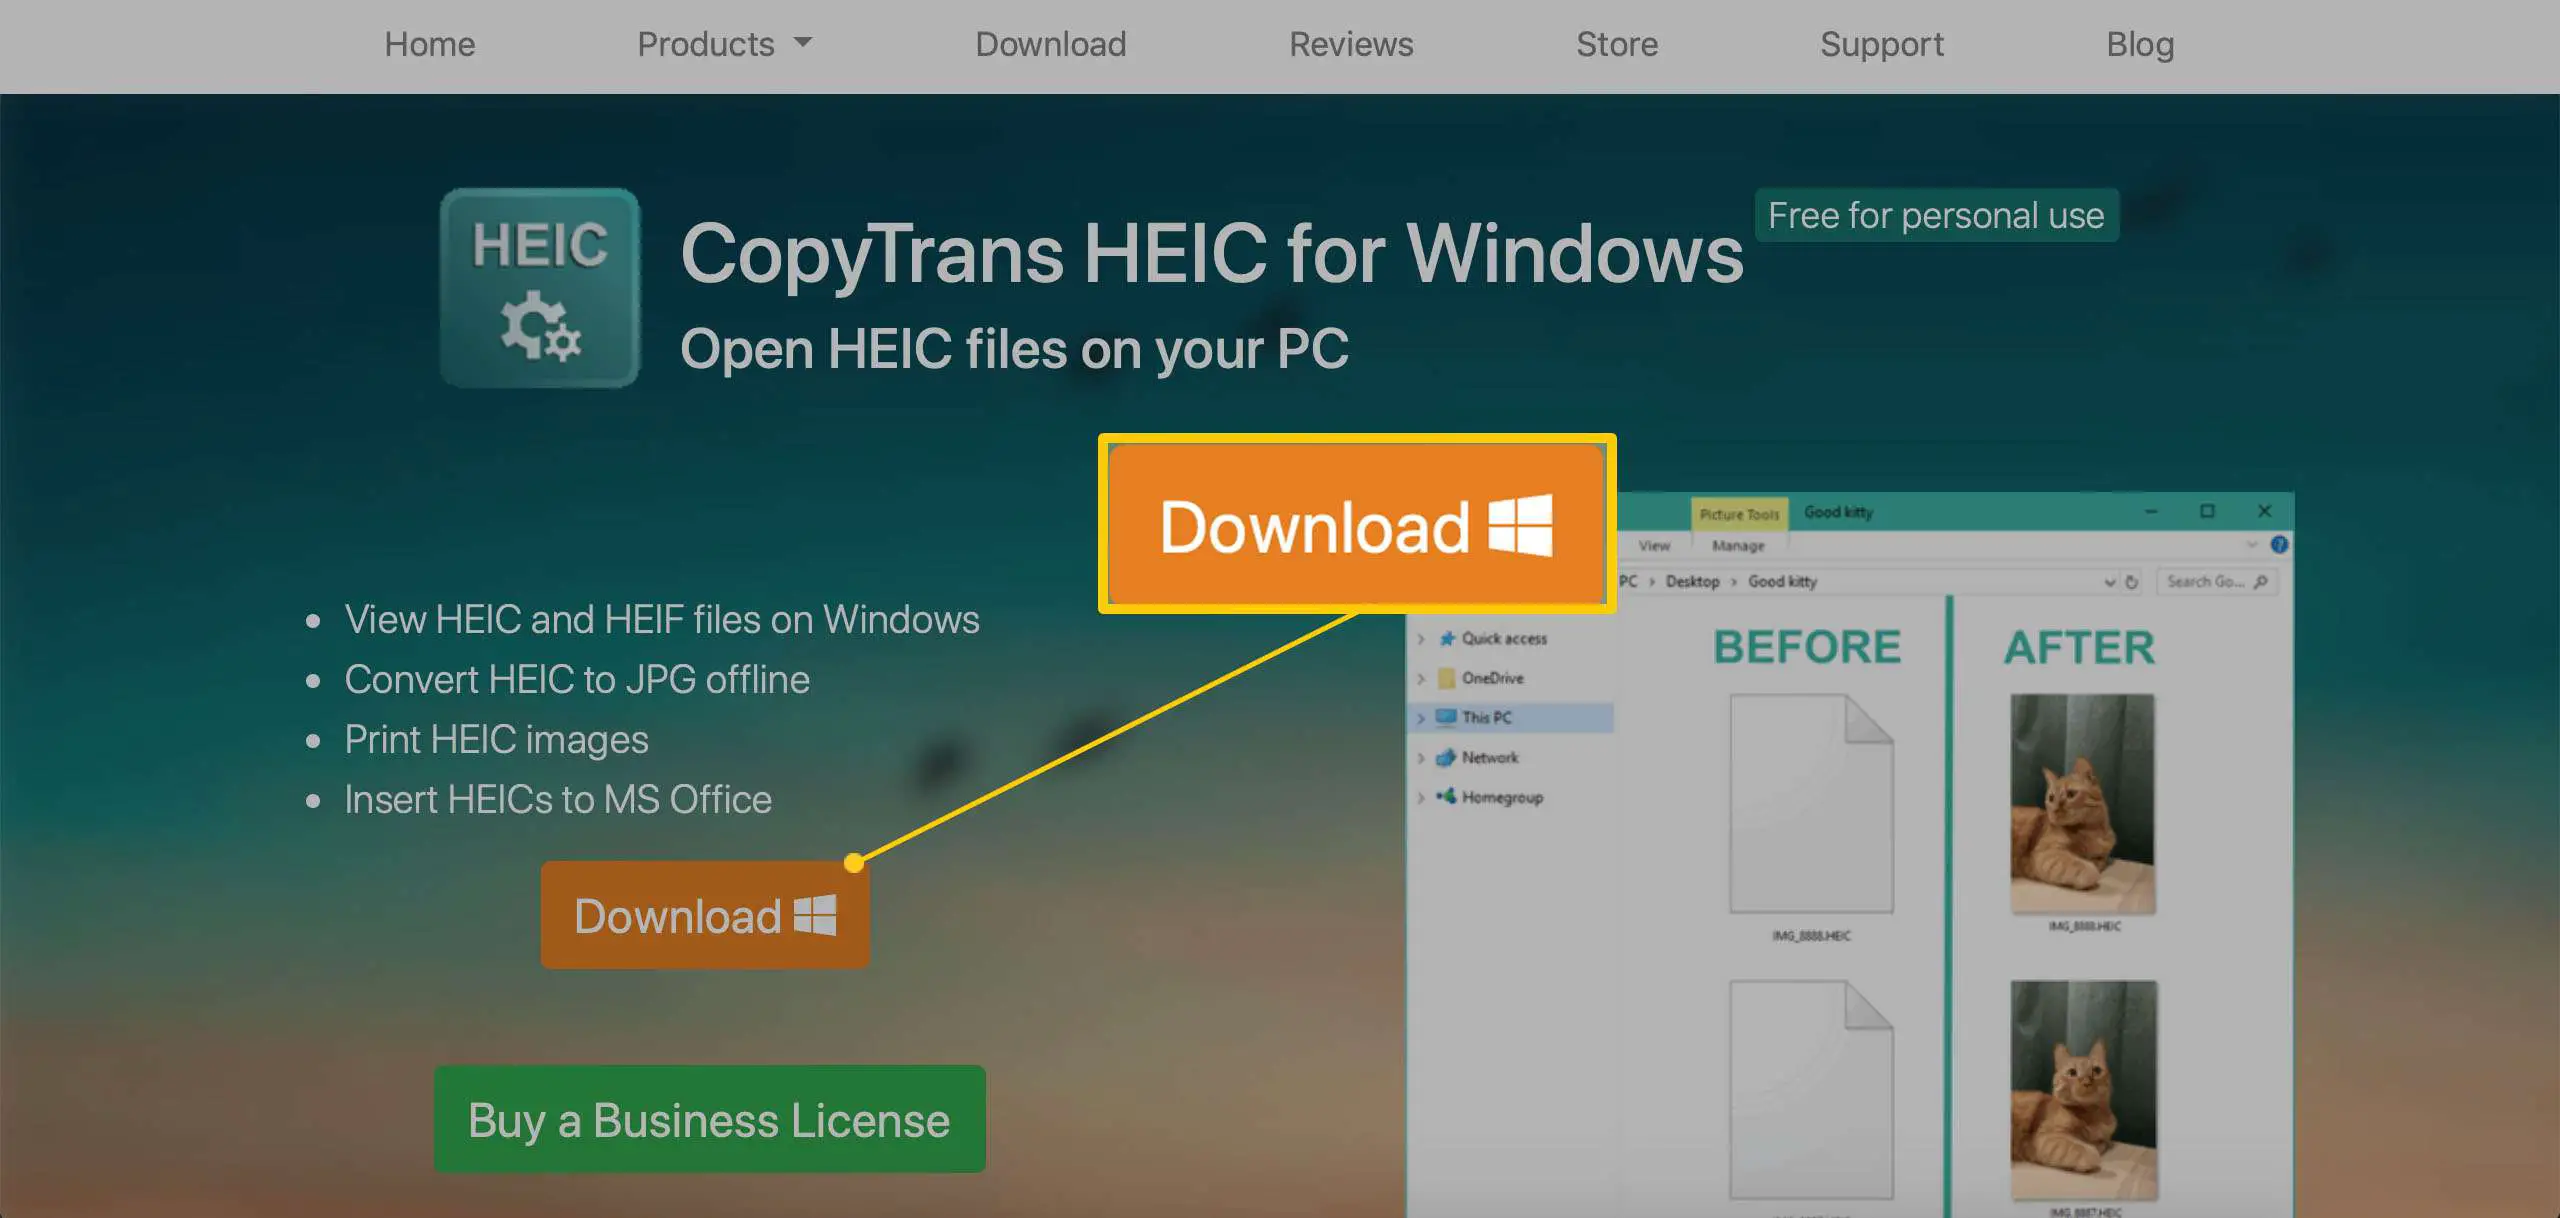 Uma janela do navegador exibindo o pacote de software CopyTrans HEIC para Windows